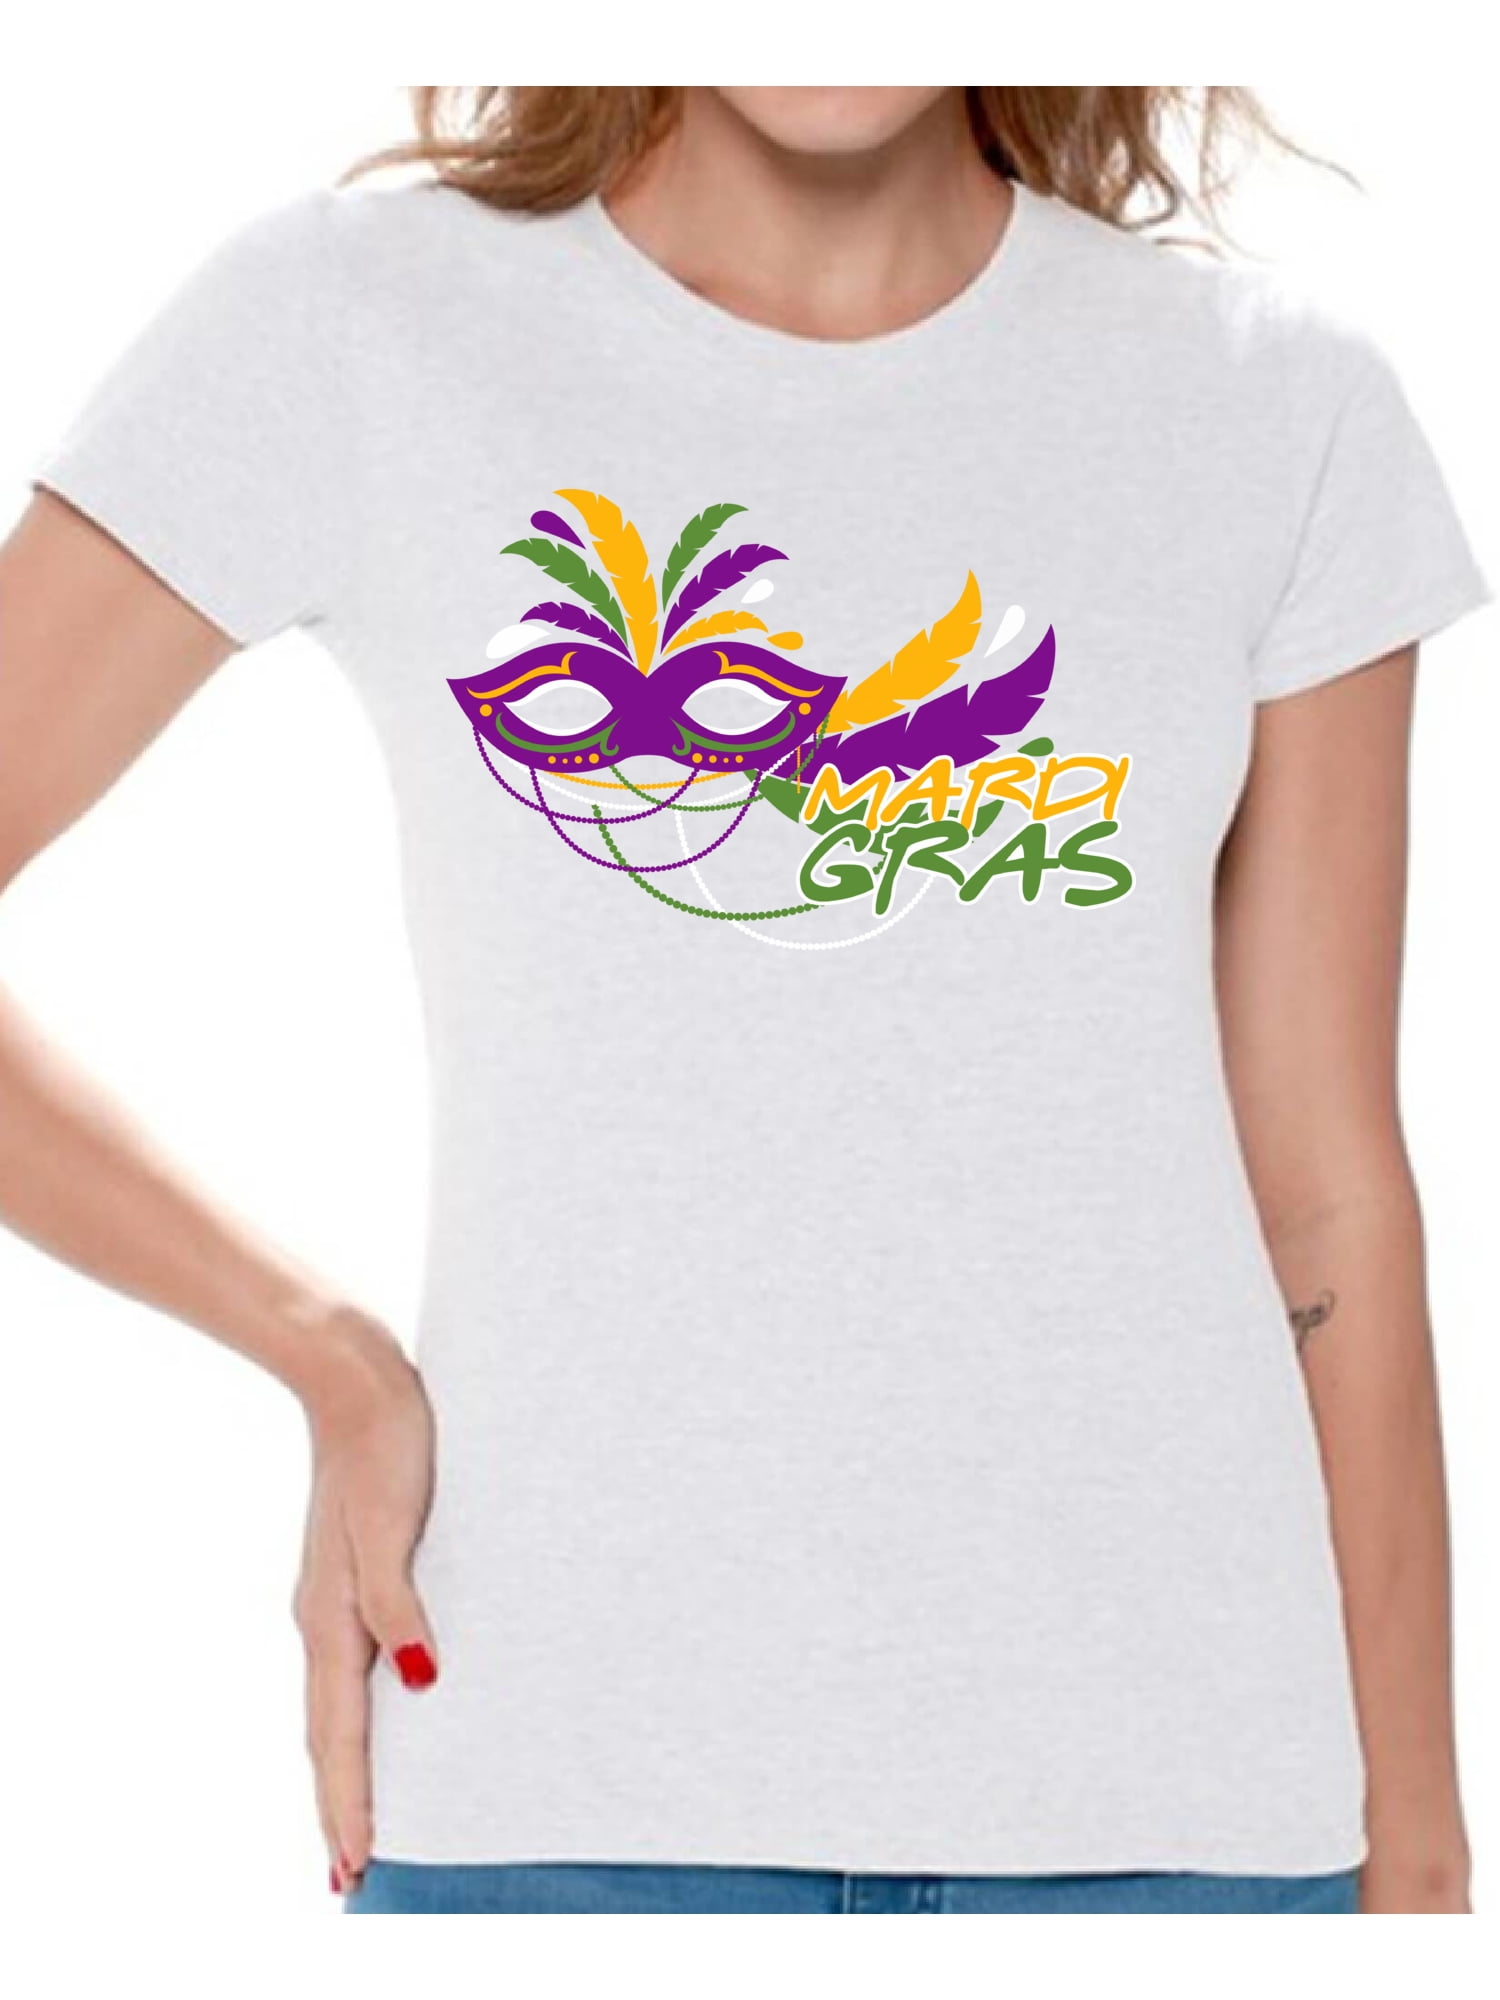 Mardi Gras T-Shirt for Women Festive Tees Carnival Mask Carnaval 2021 ...